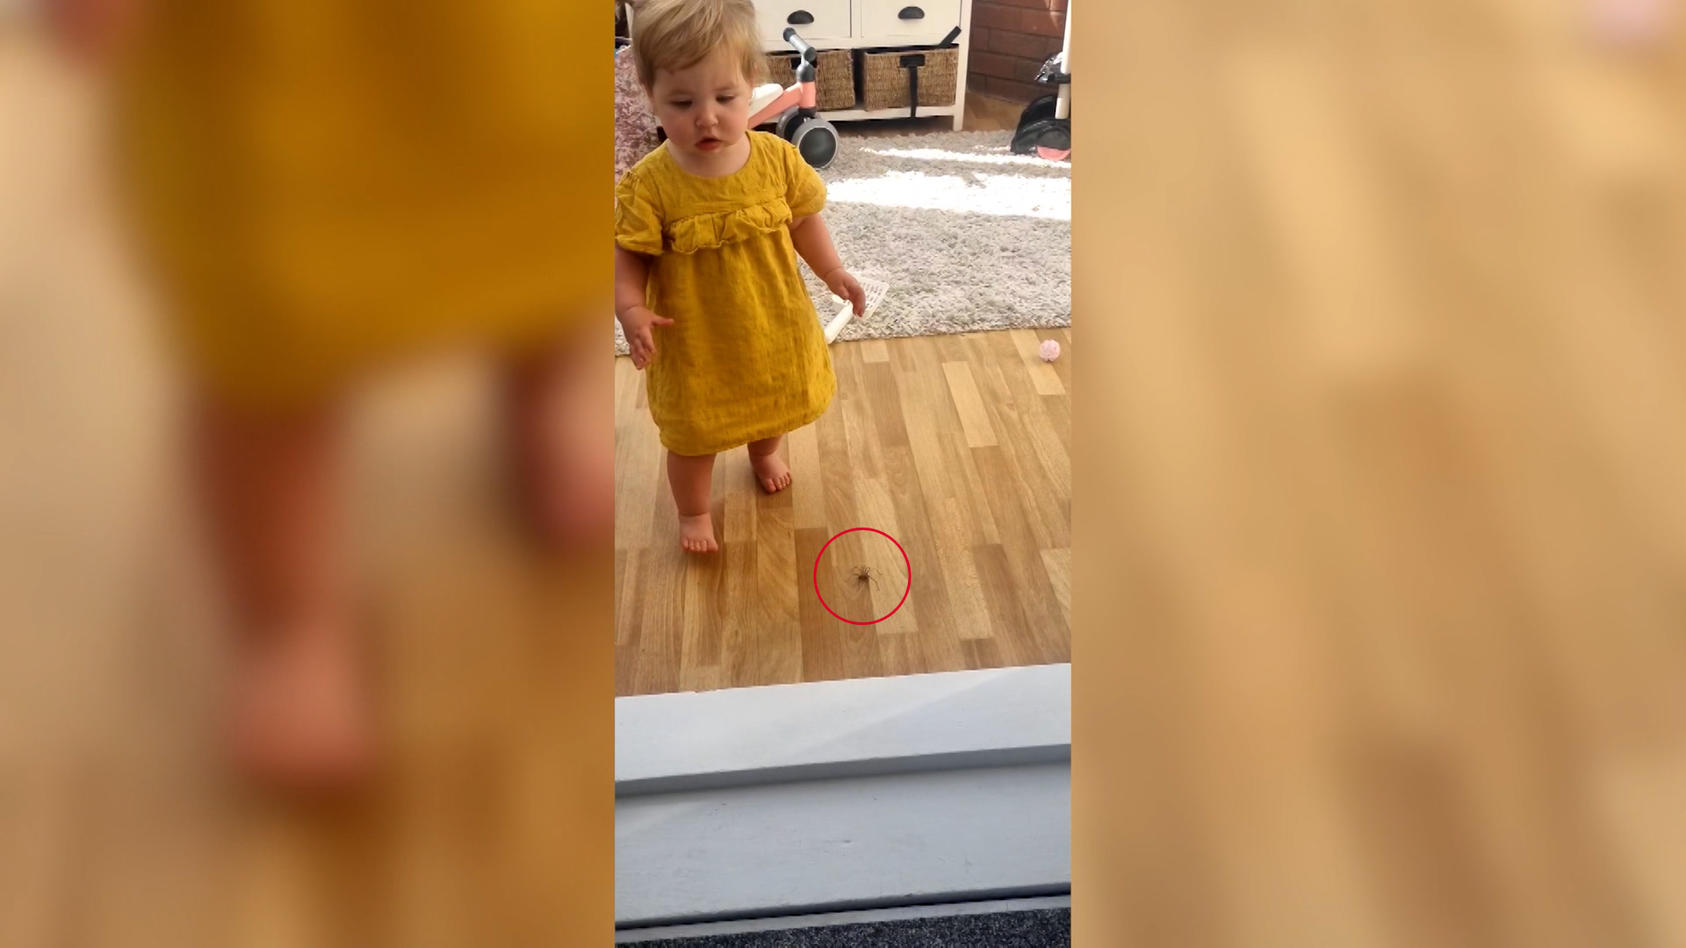 Einjährige tritt beinahe auf Ekelspinne Während Mama filmt